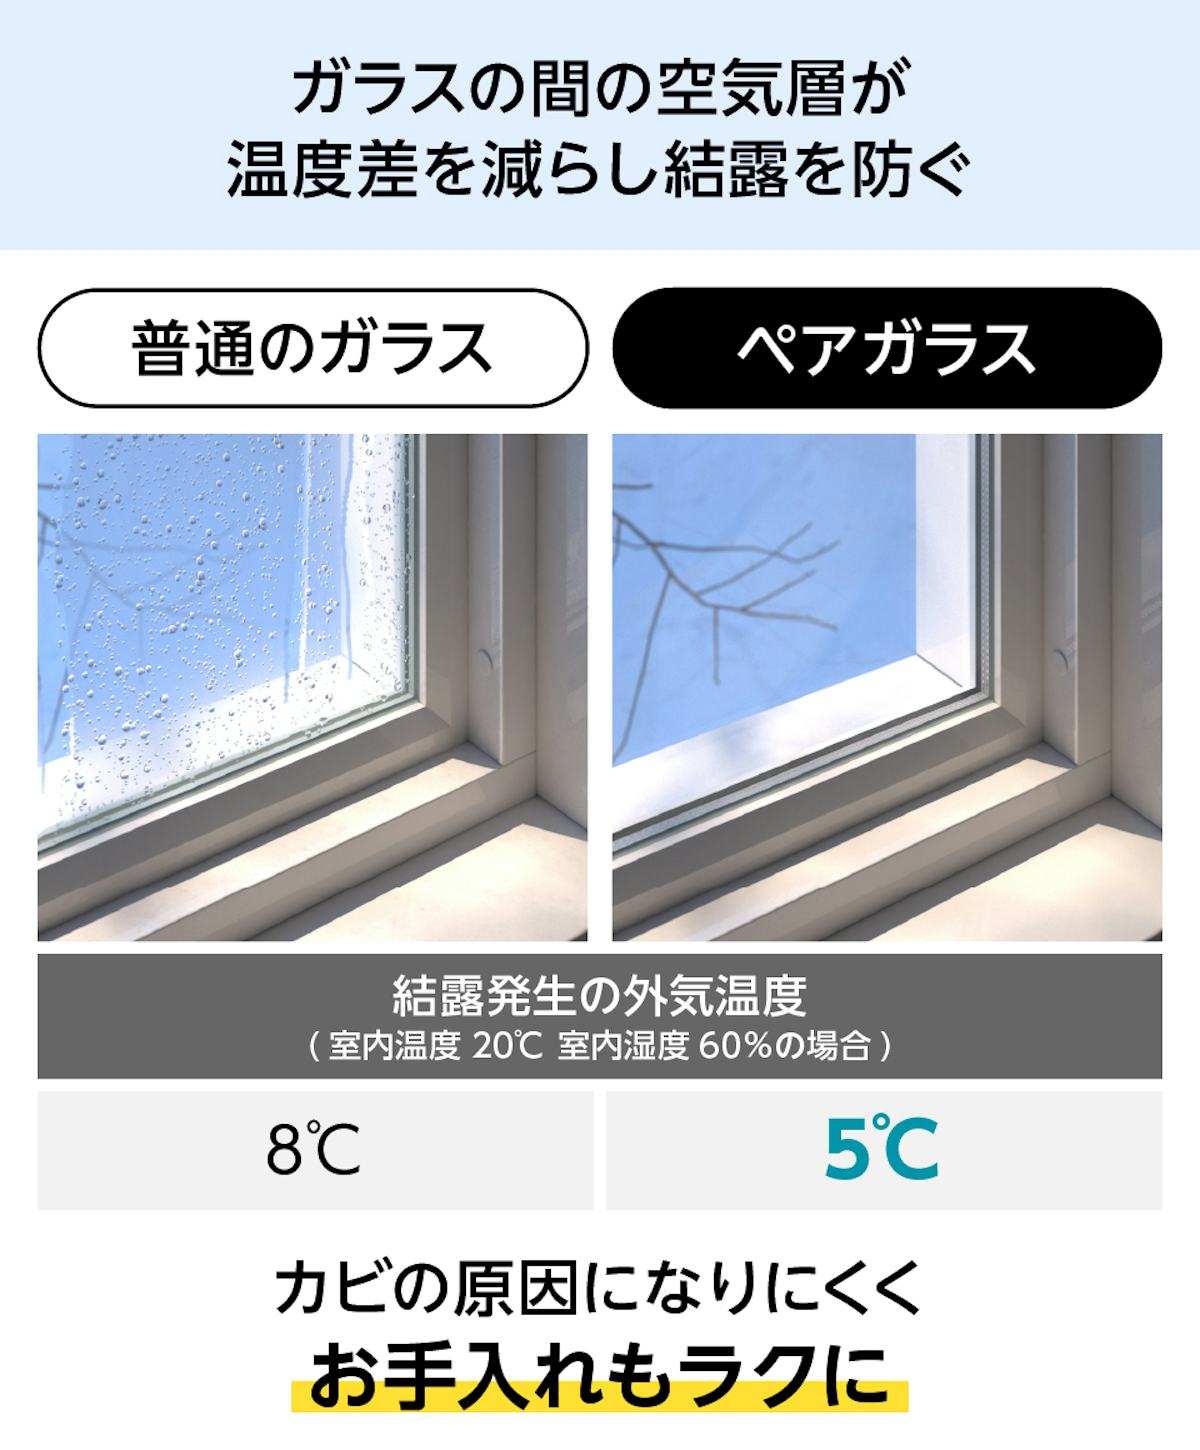 ペアガラス(複層ガラス) - 空気層が温度差を減らし結露を防ぐ